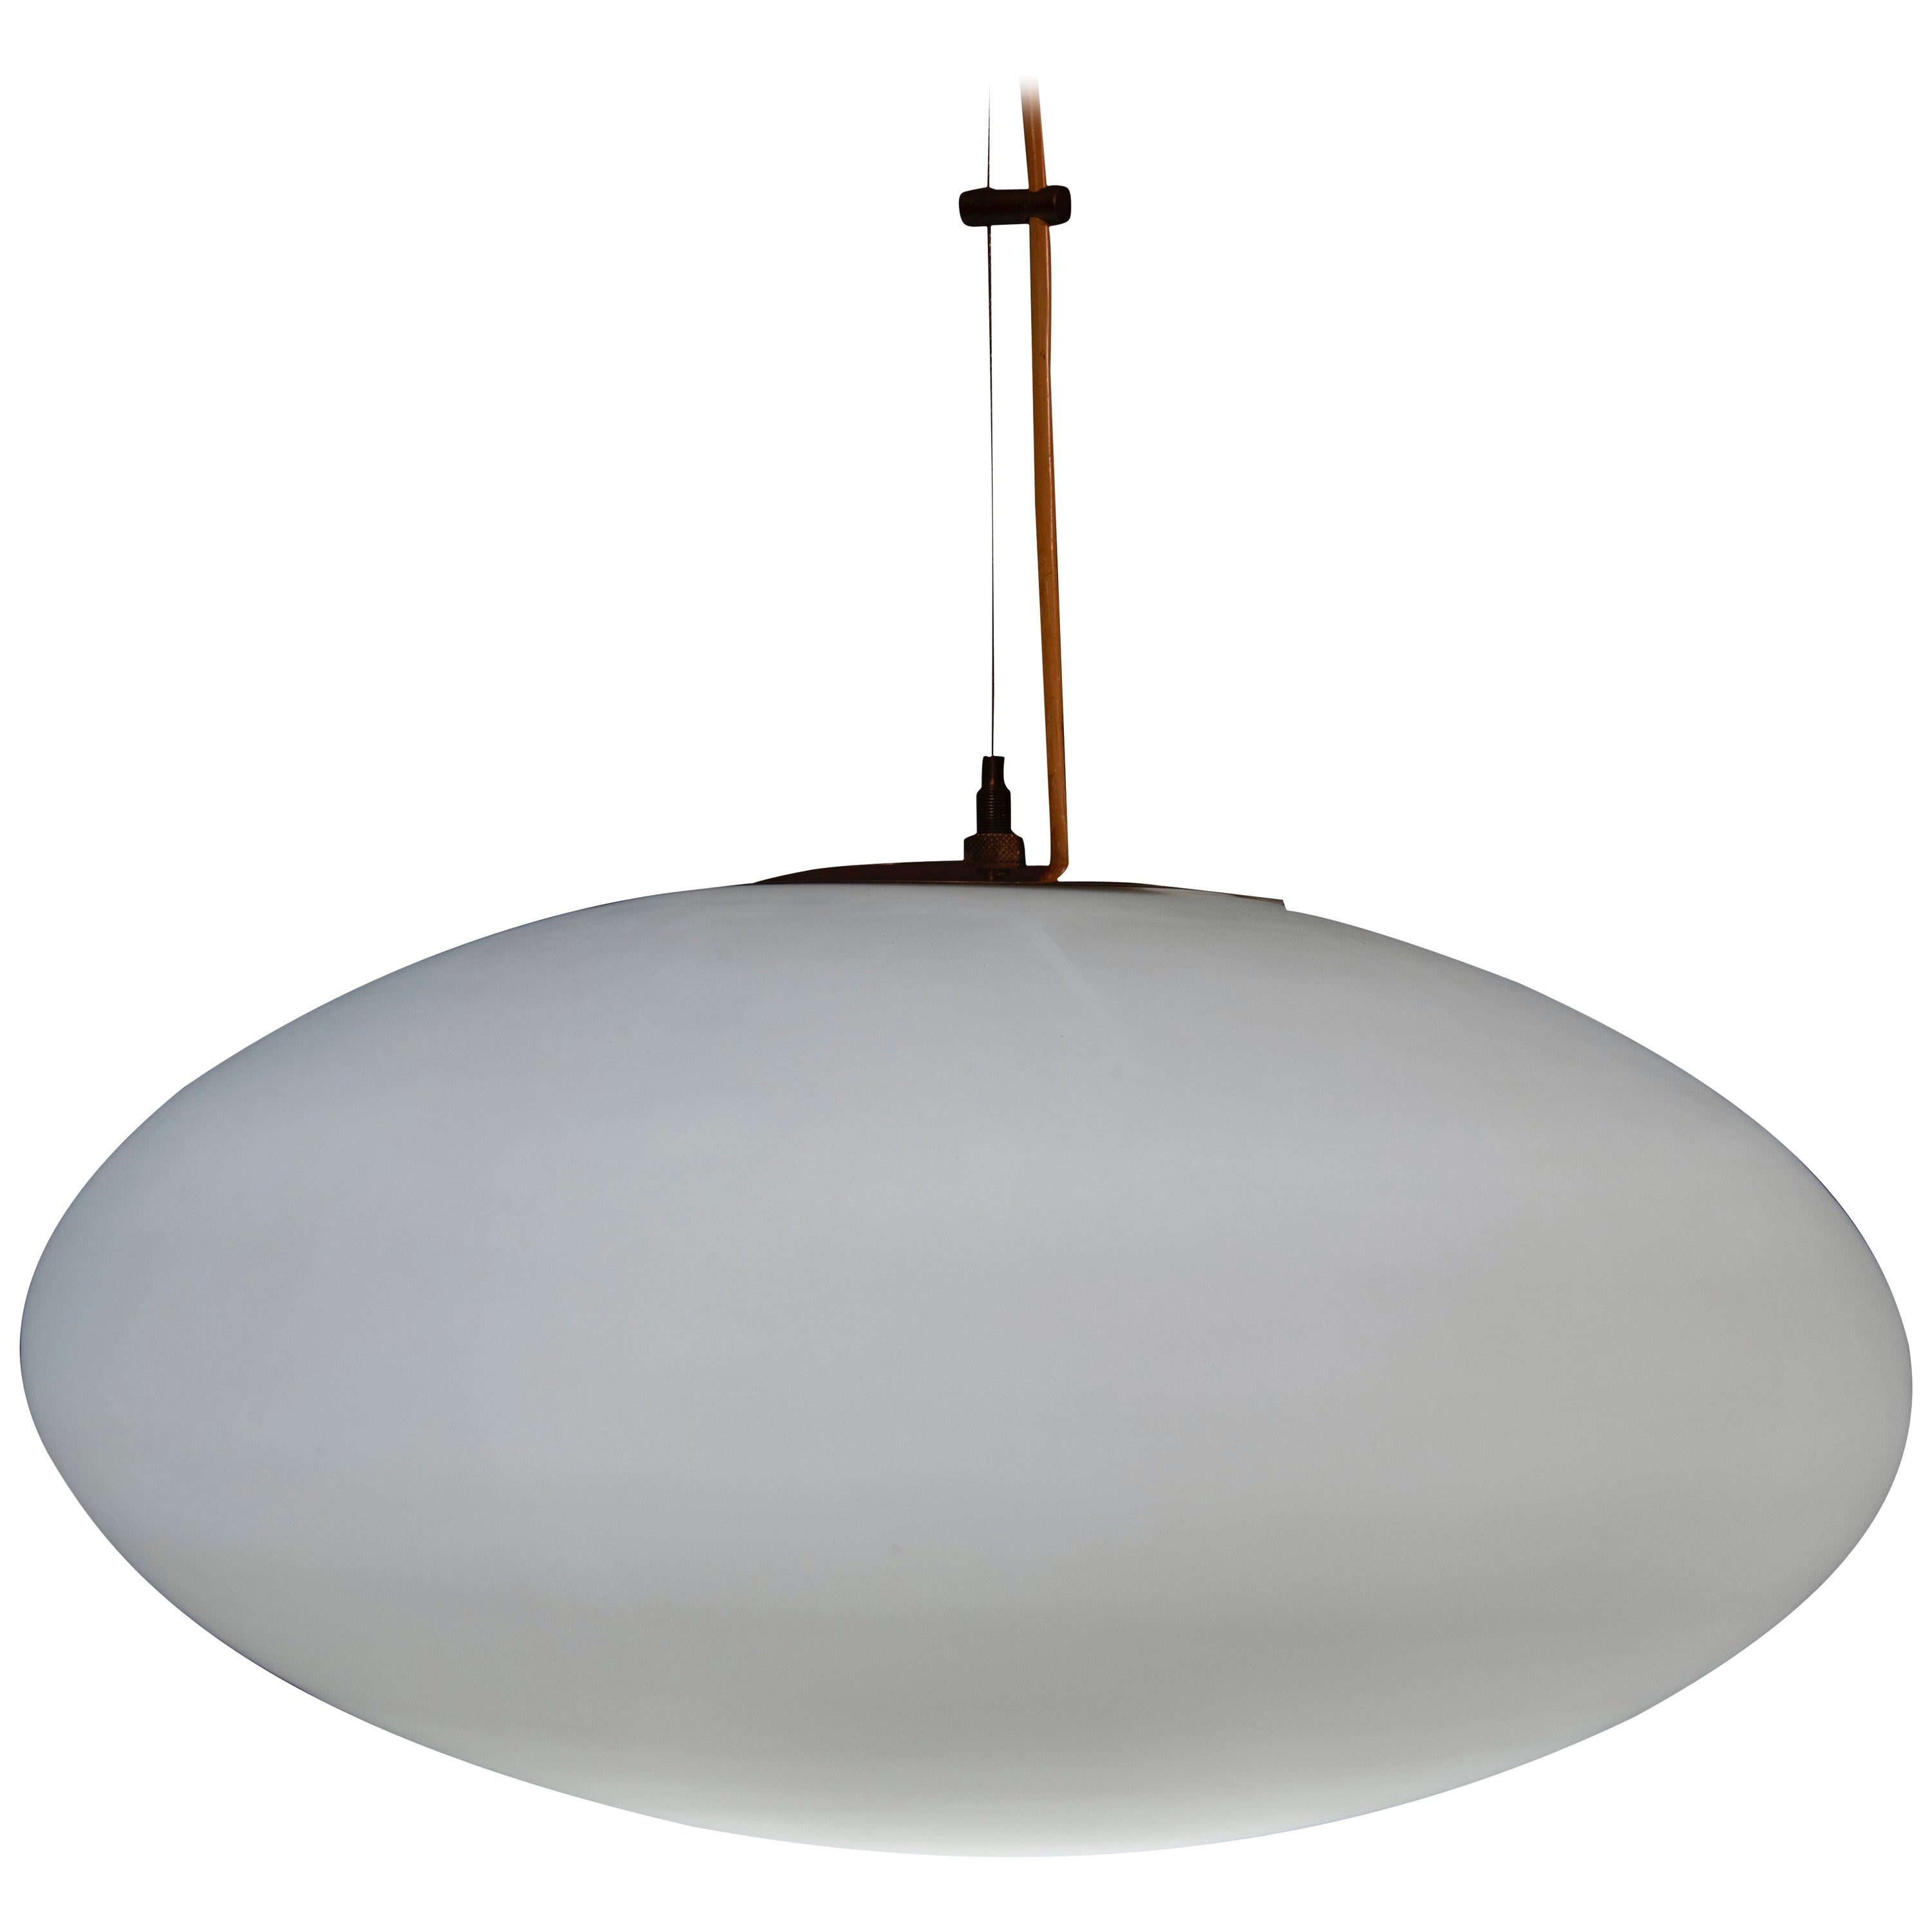 Gaetano Scolari for Stilnovo Model 1187 Ceiling Lamp 